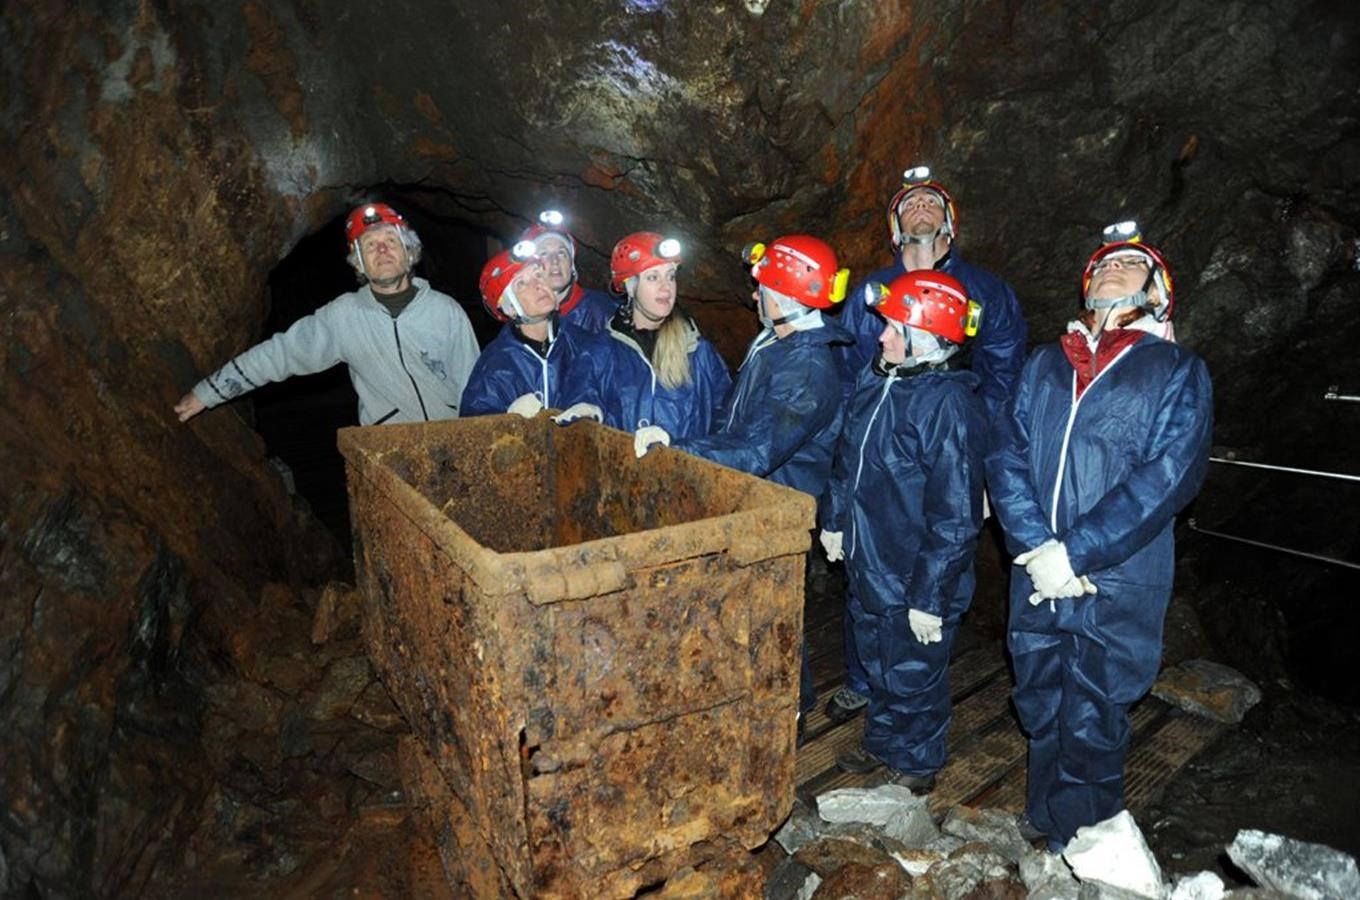 Historický důl Kovárna v Obřím dole